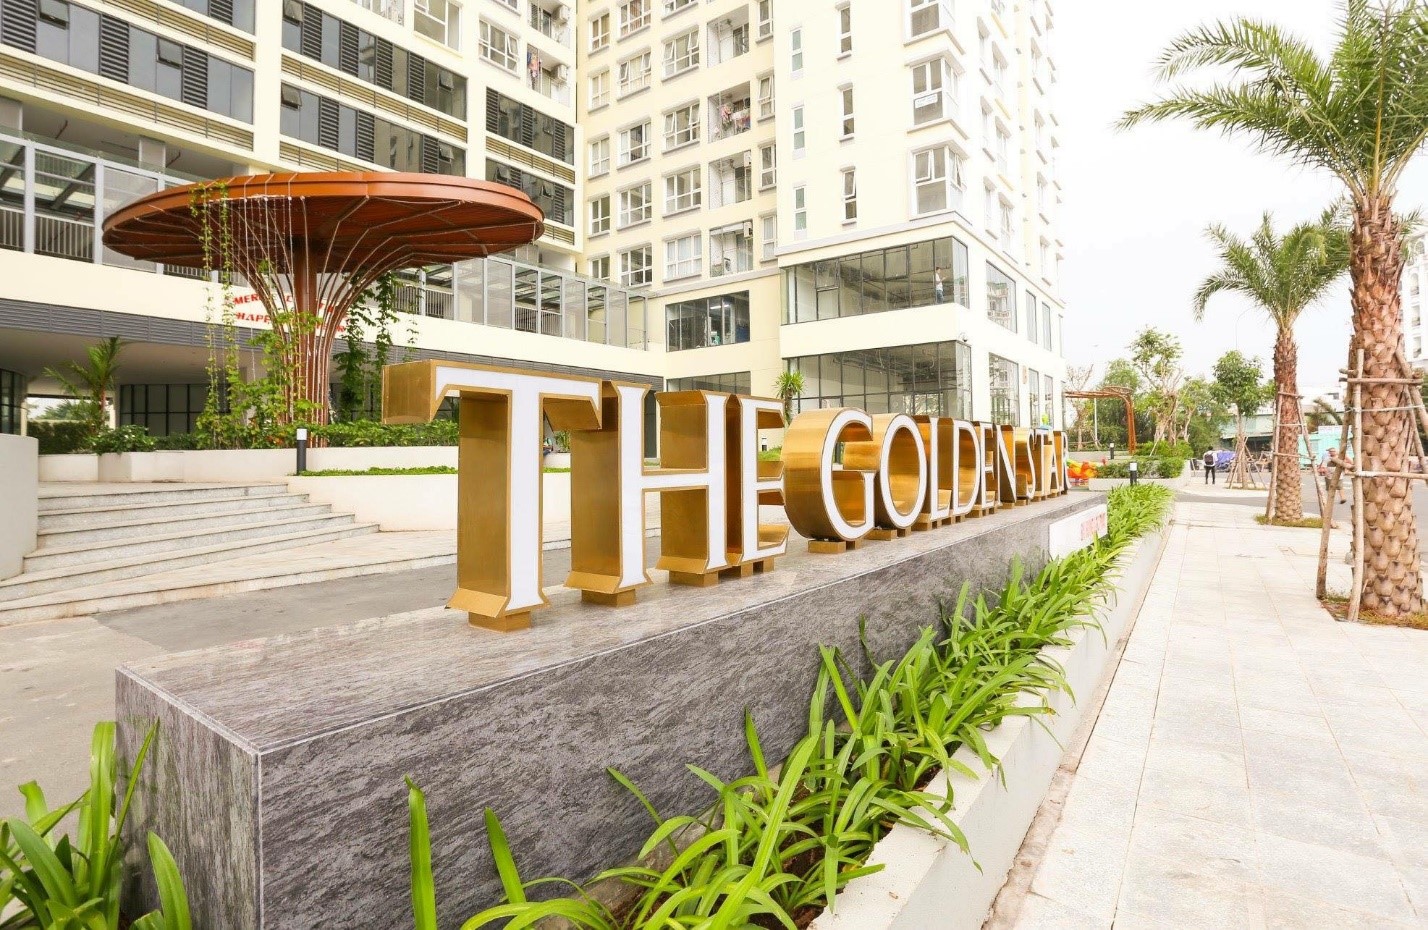 Dự án Golden Star tại quận 7 (TP.HCM) hiện đã bàn giao xong cho các khách hàng và đưa vào sử dụng